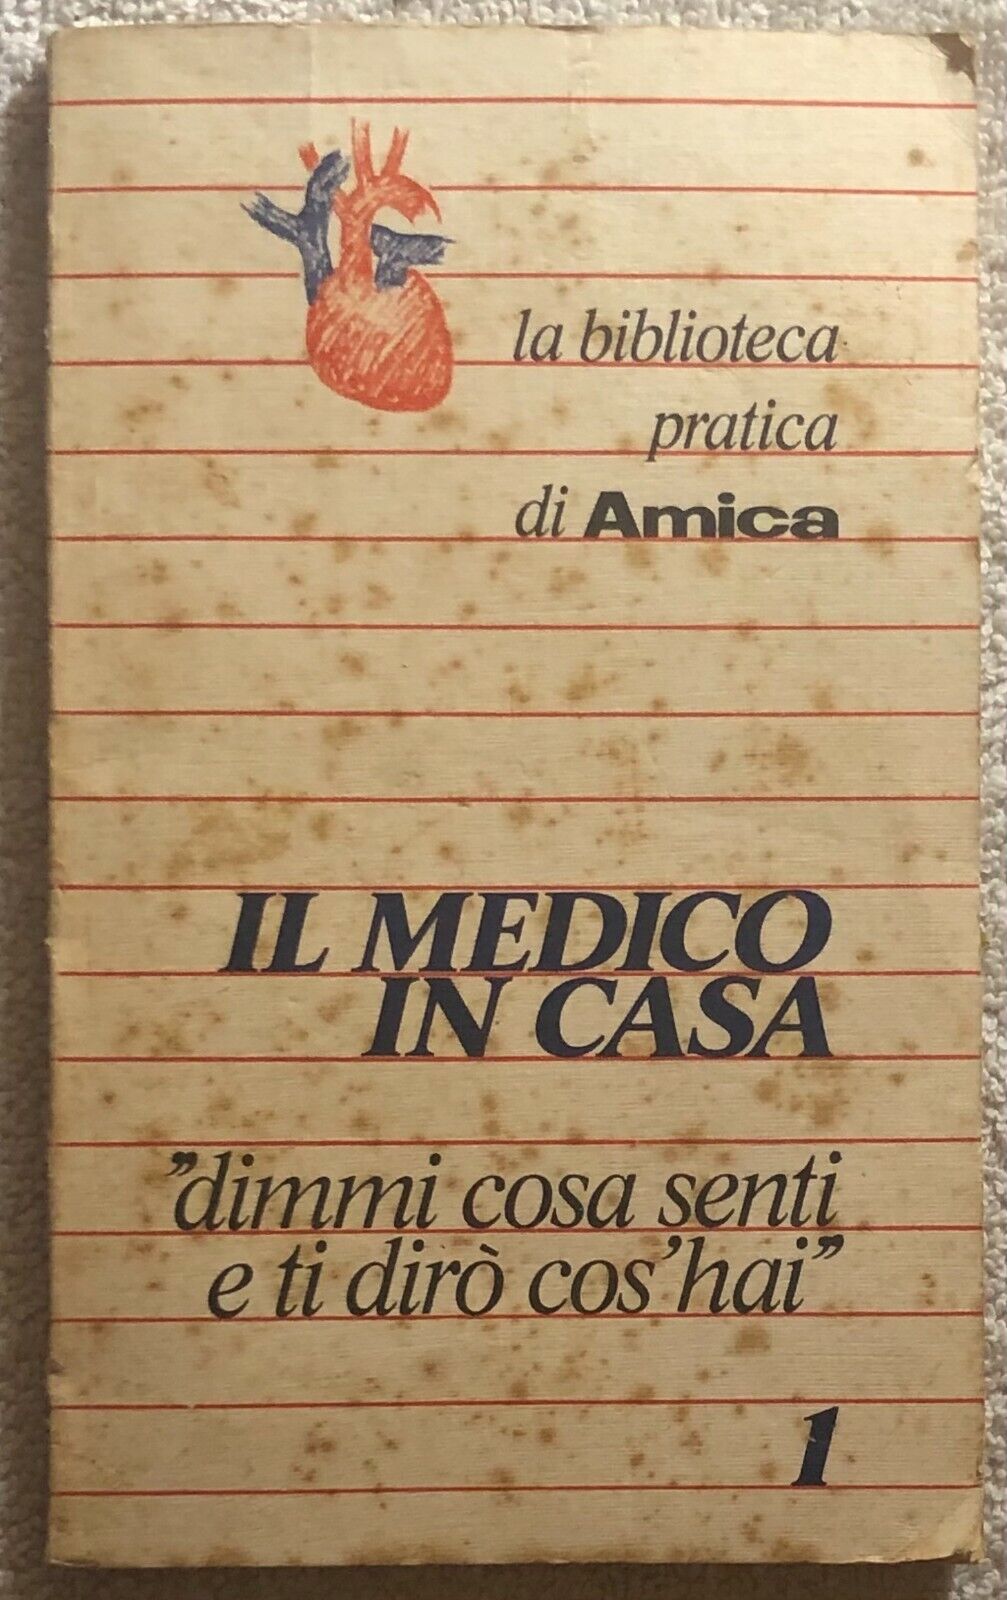 Il medico in casa 1 di Aa.vv.,  1977,  Amica